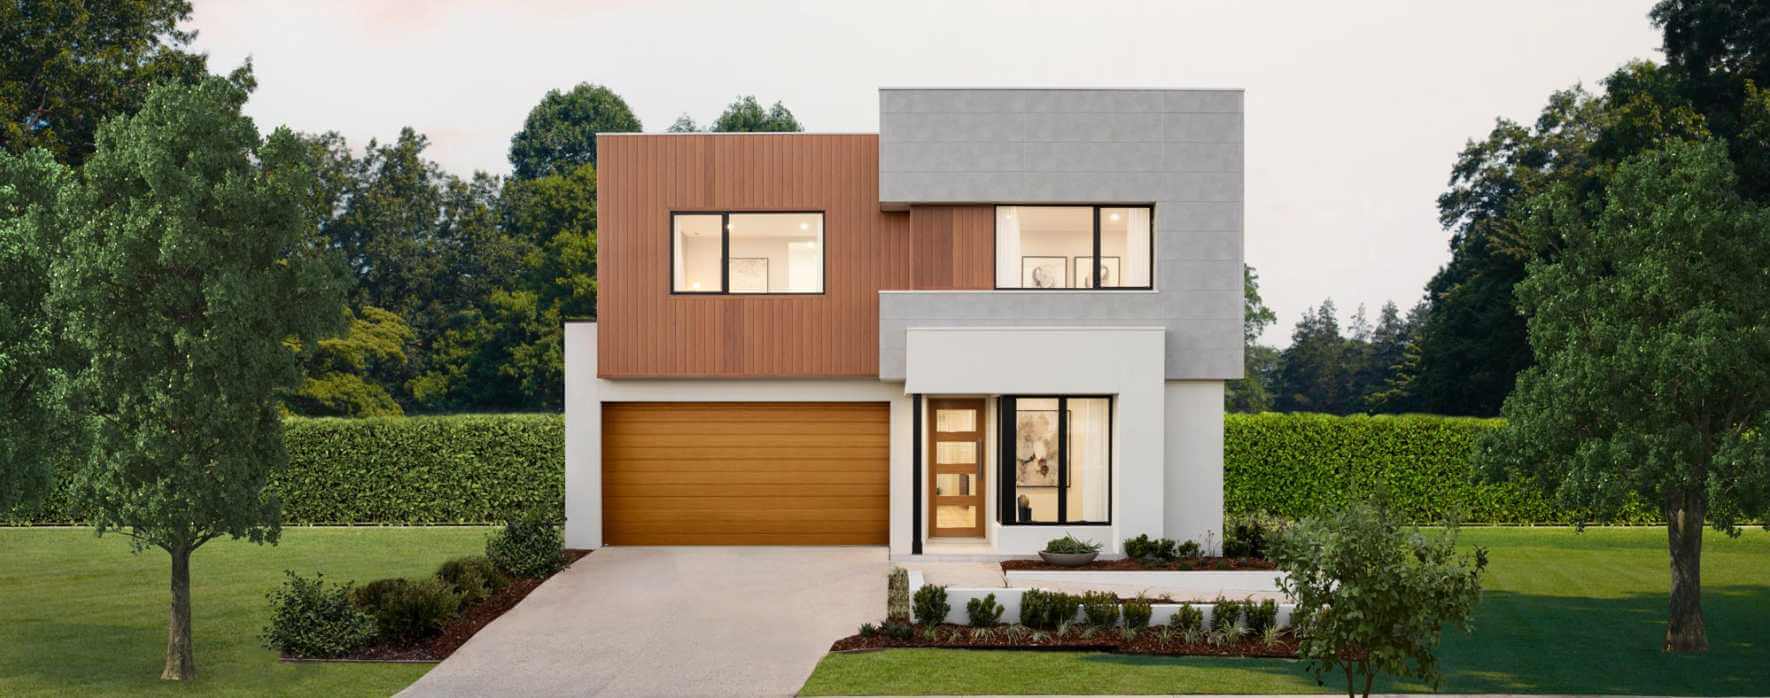 charisma-30-double-storey-house-design-lennox-facade